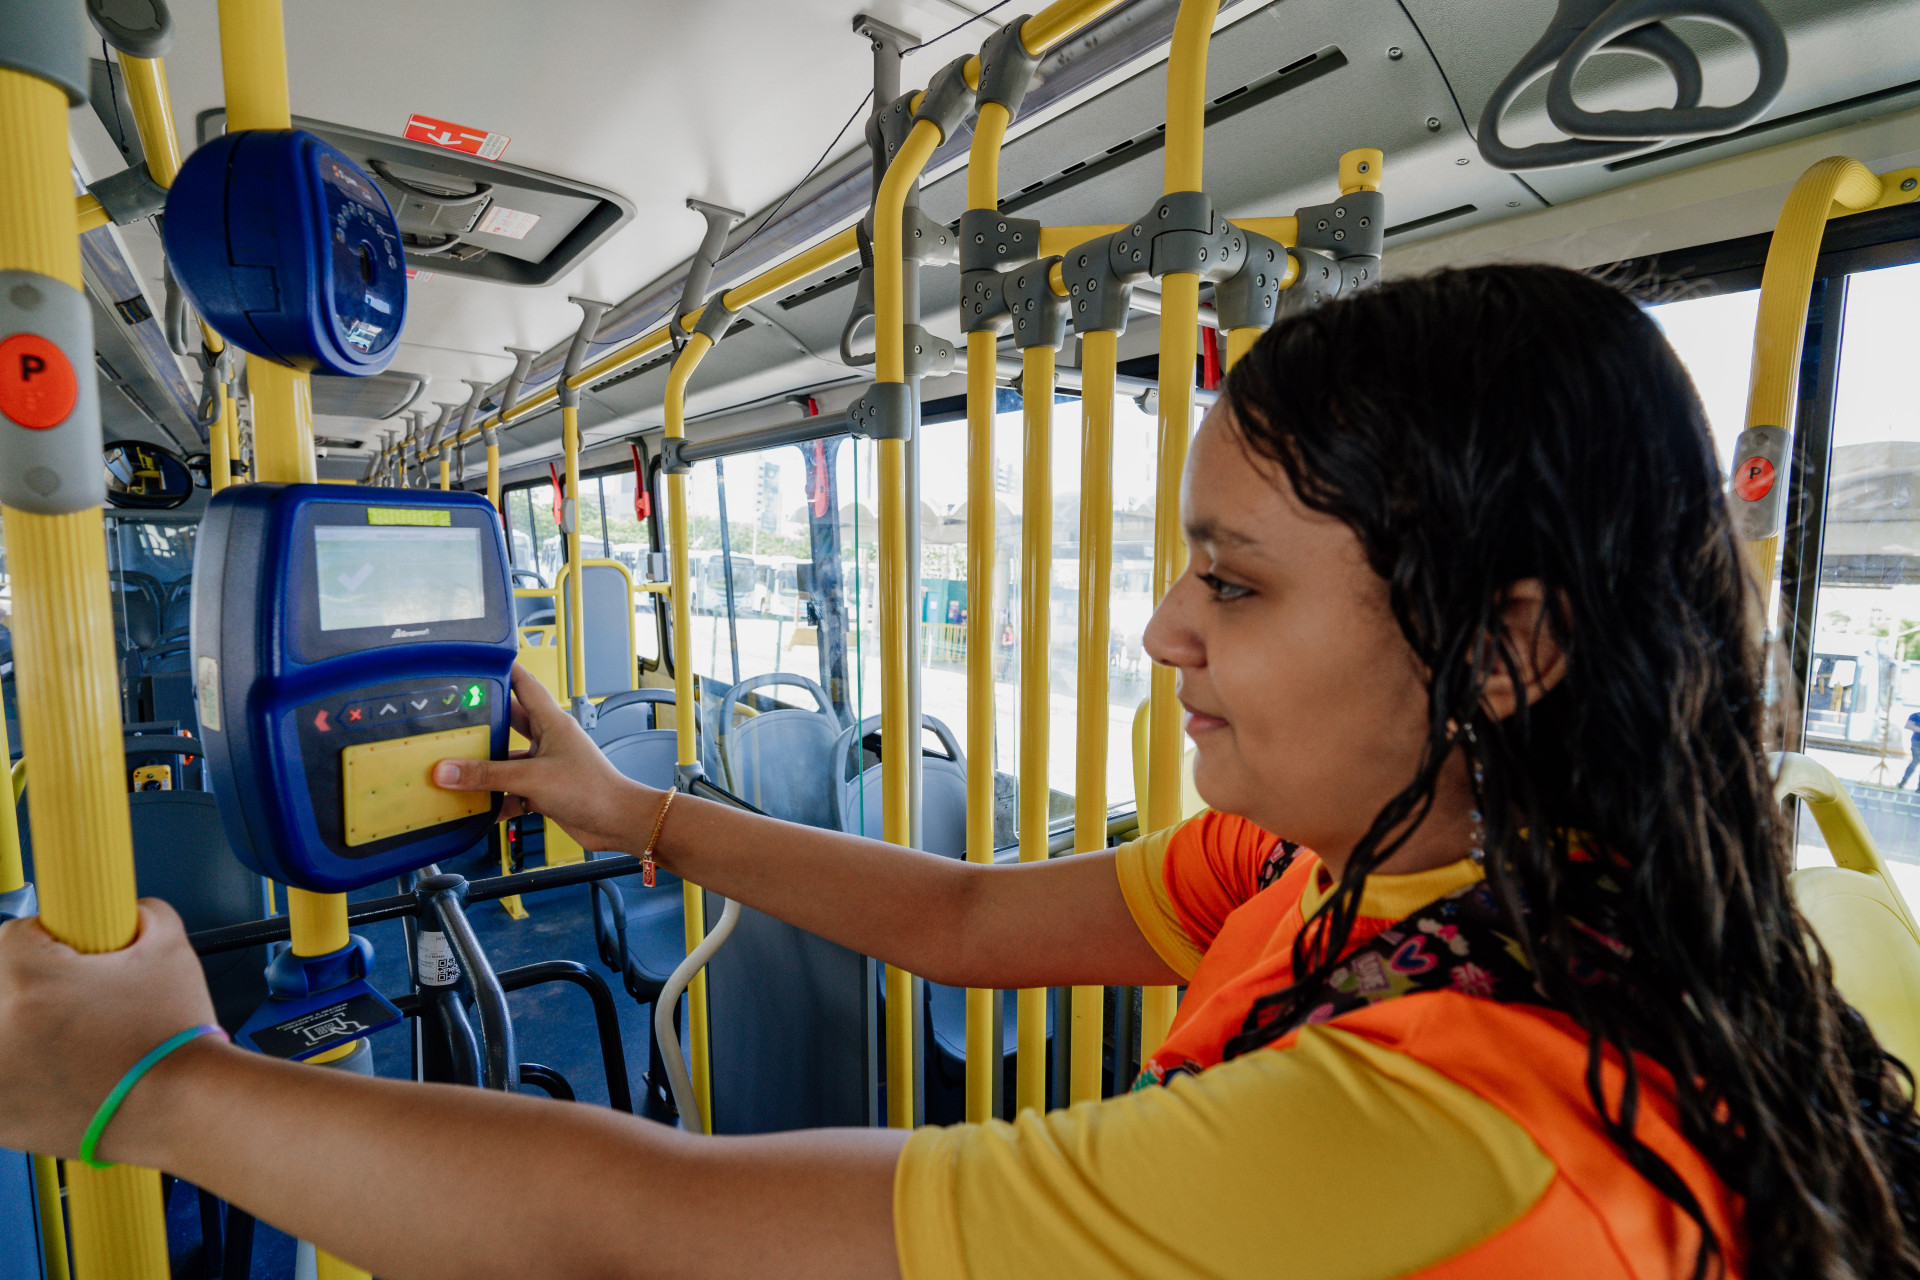 Tanto os ônibus municipais de Fortaleza, quanto os intermunicipais na RMF passarão a ter um sistema de passe livre estudantil (Foto: JÚLIO CAESAR)